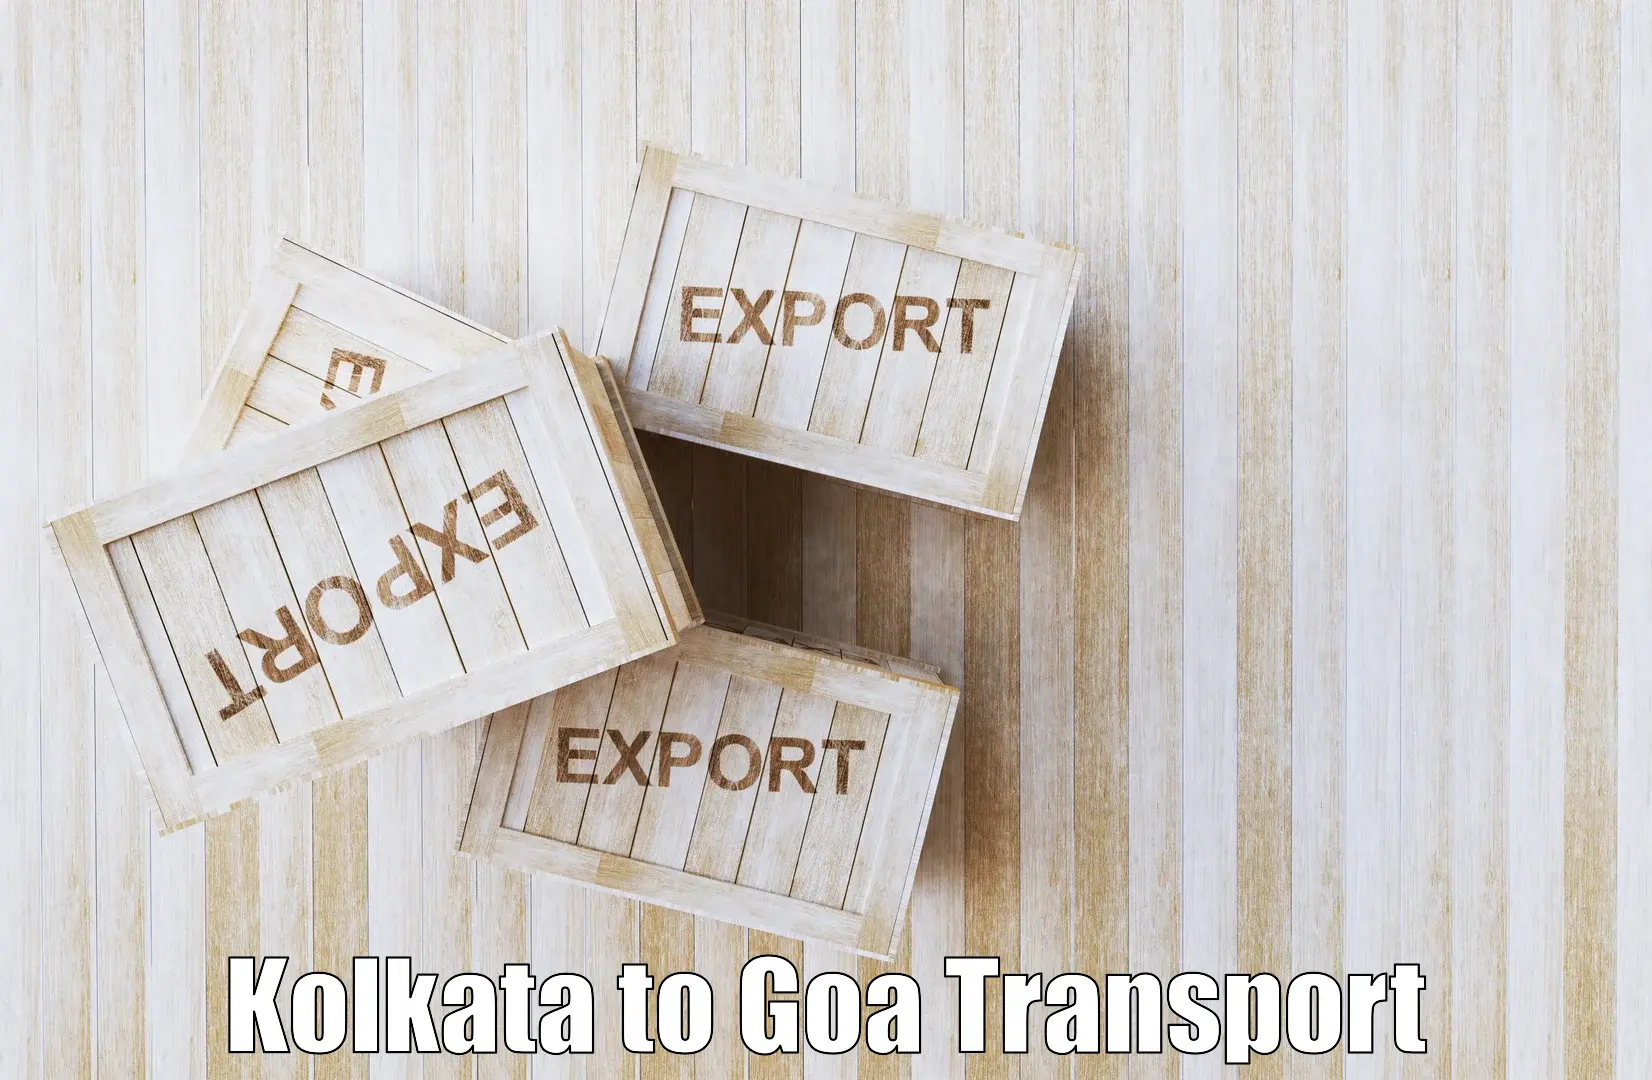 Land transport services Kolkata to Bicholim